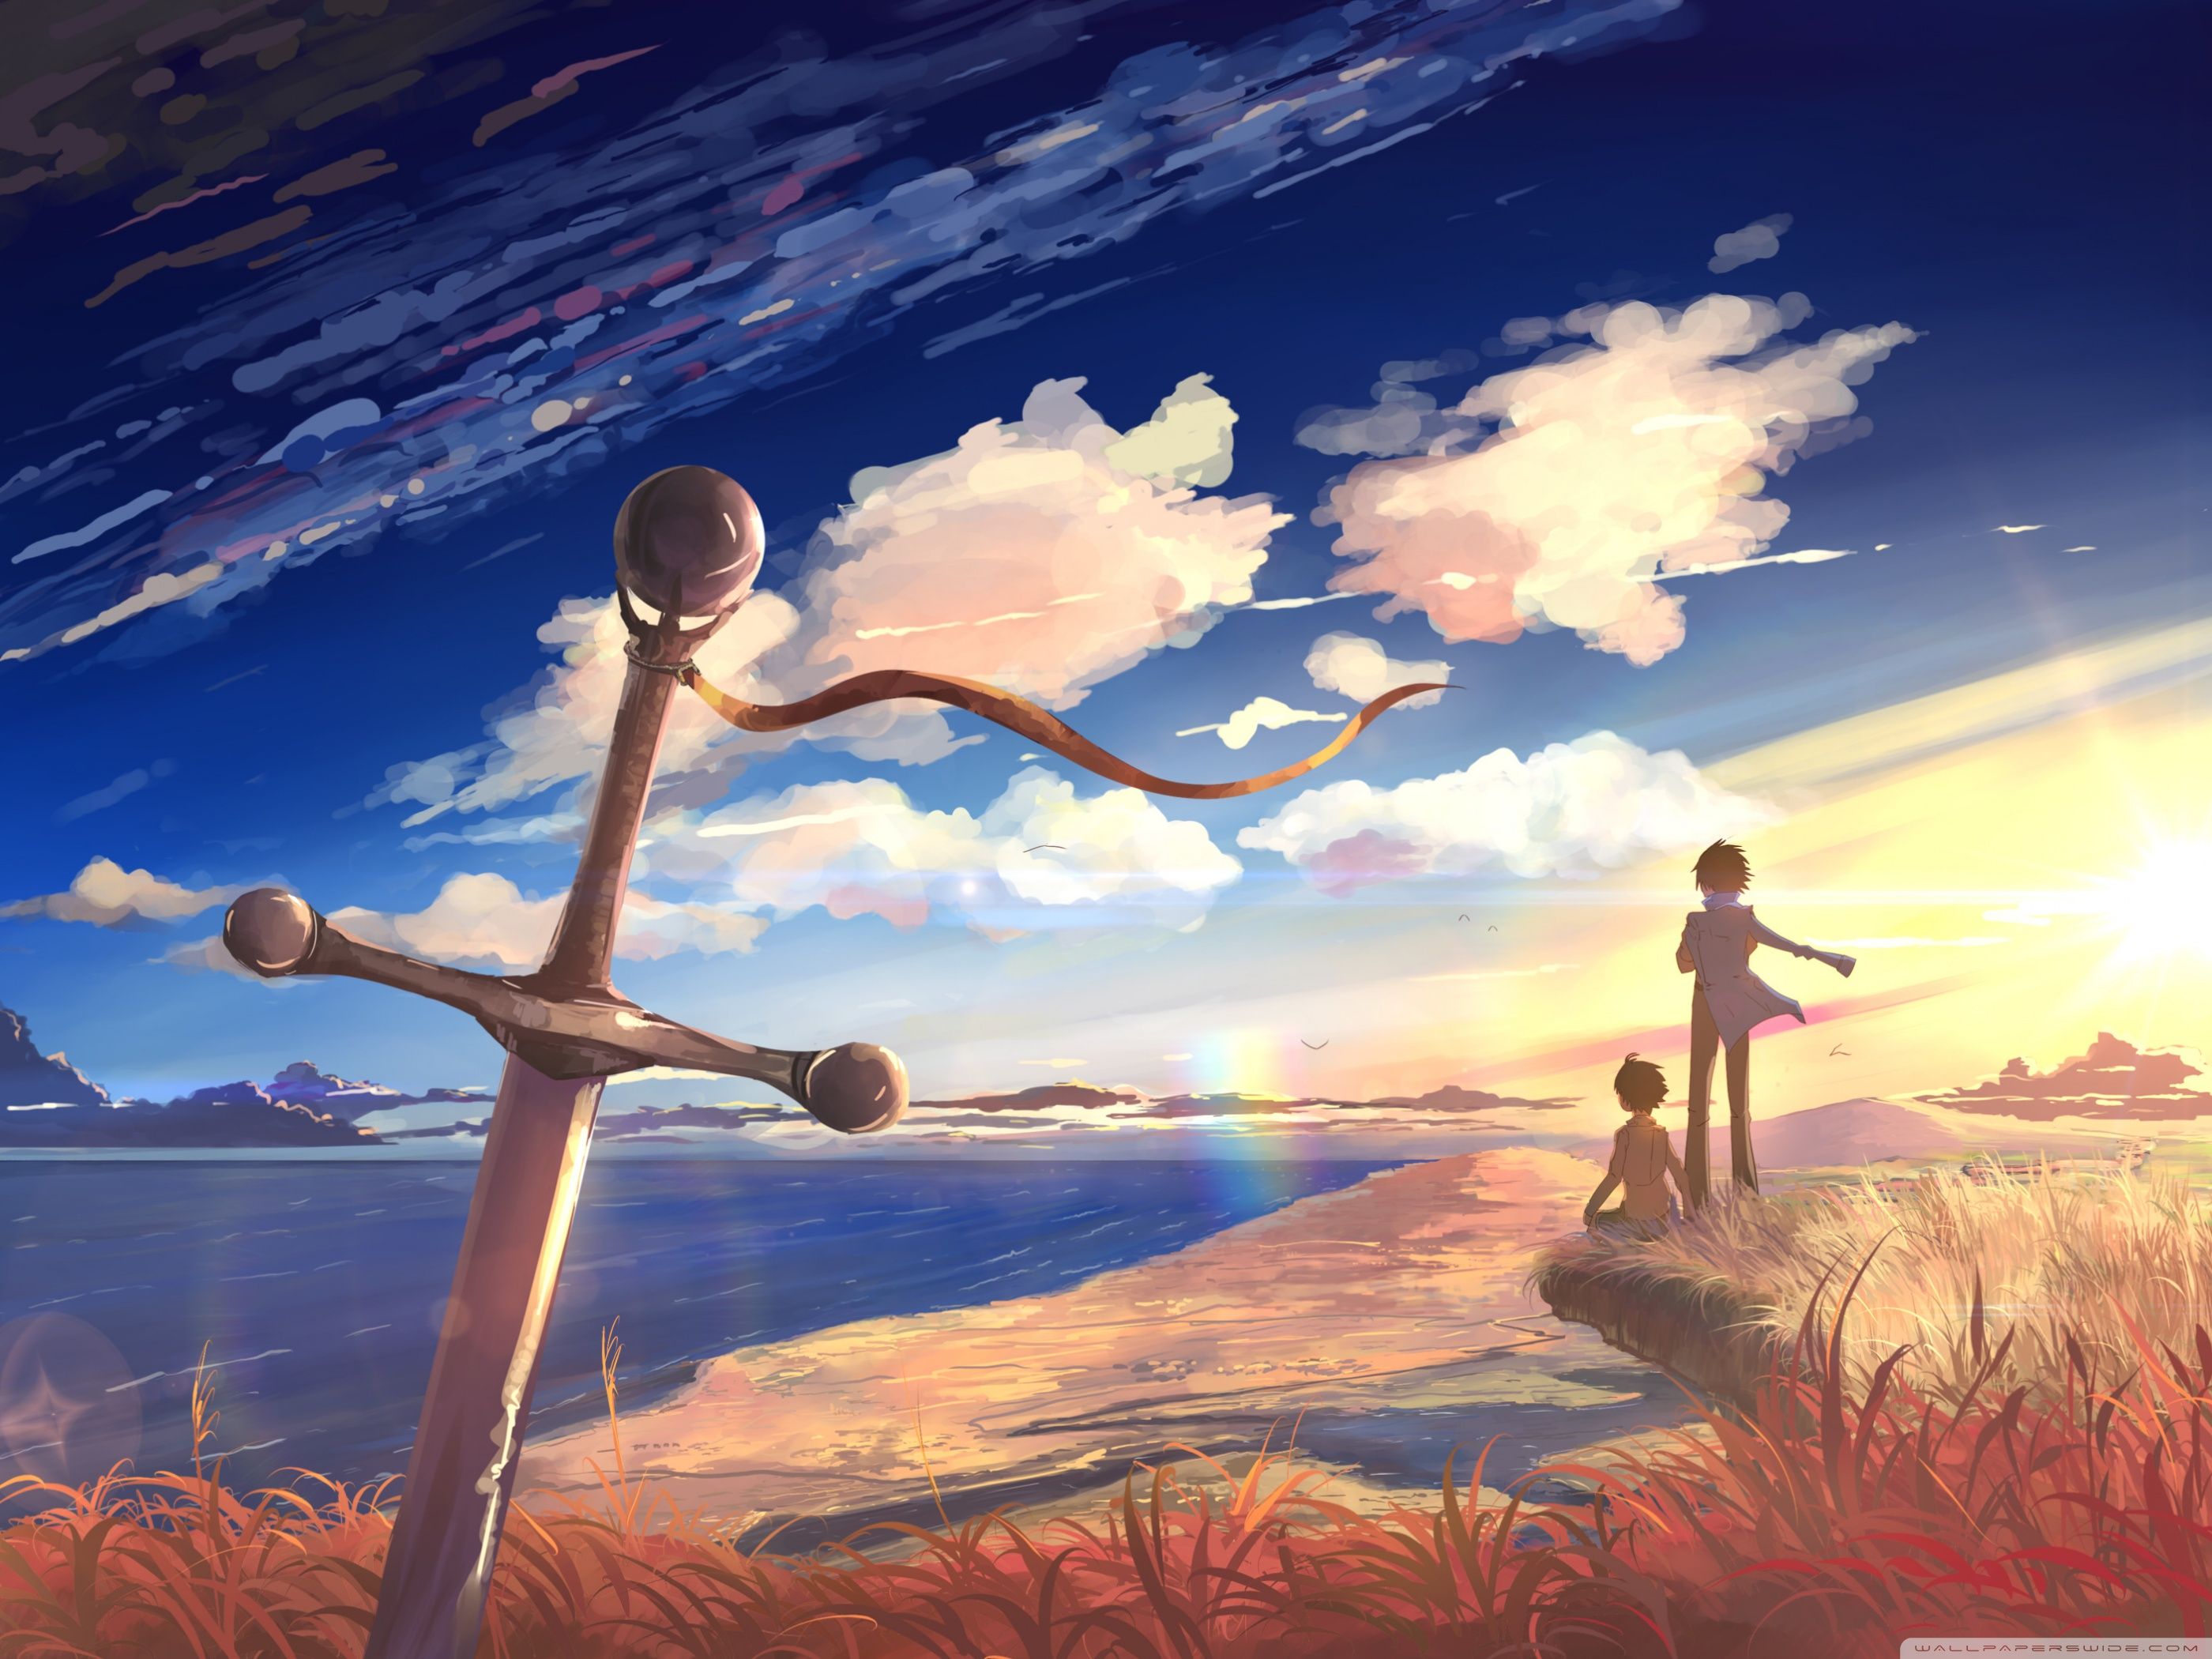 Sword Anime Scene Ultra HD Desktop Background Wallpaper for 4K UHD